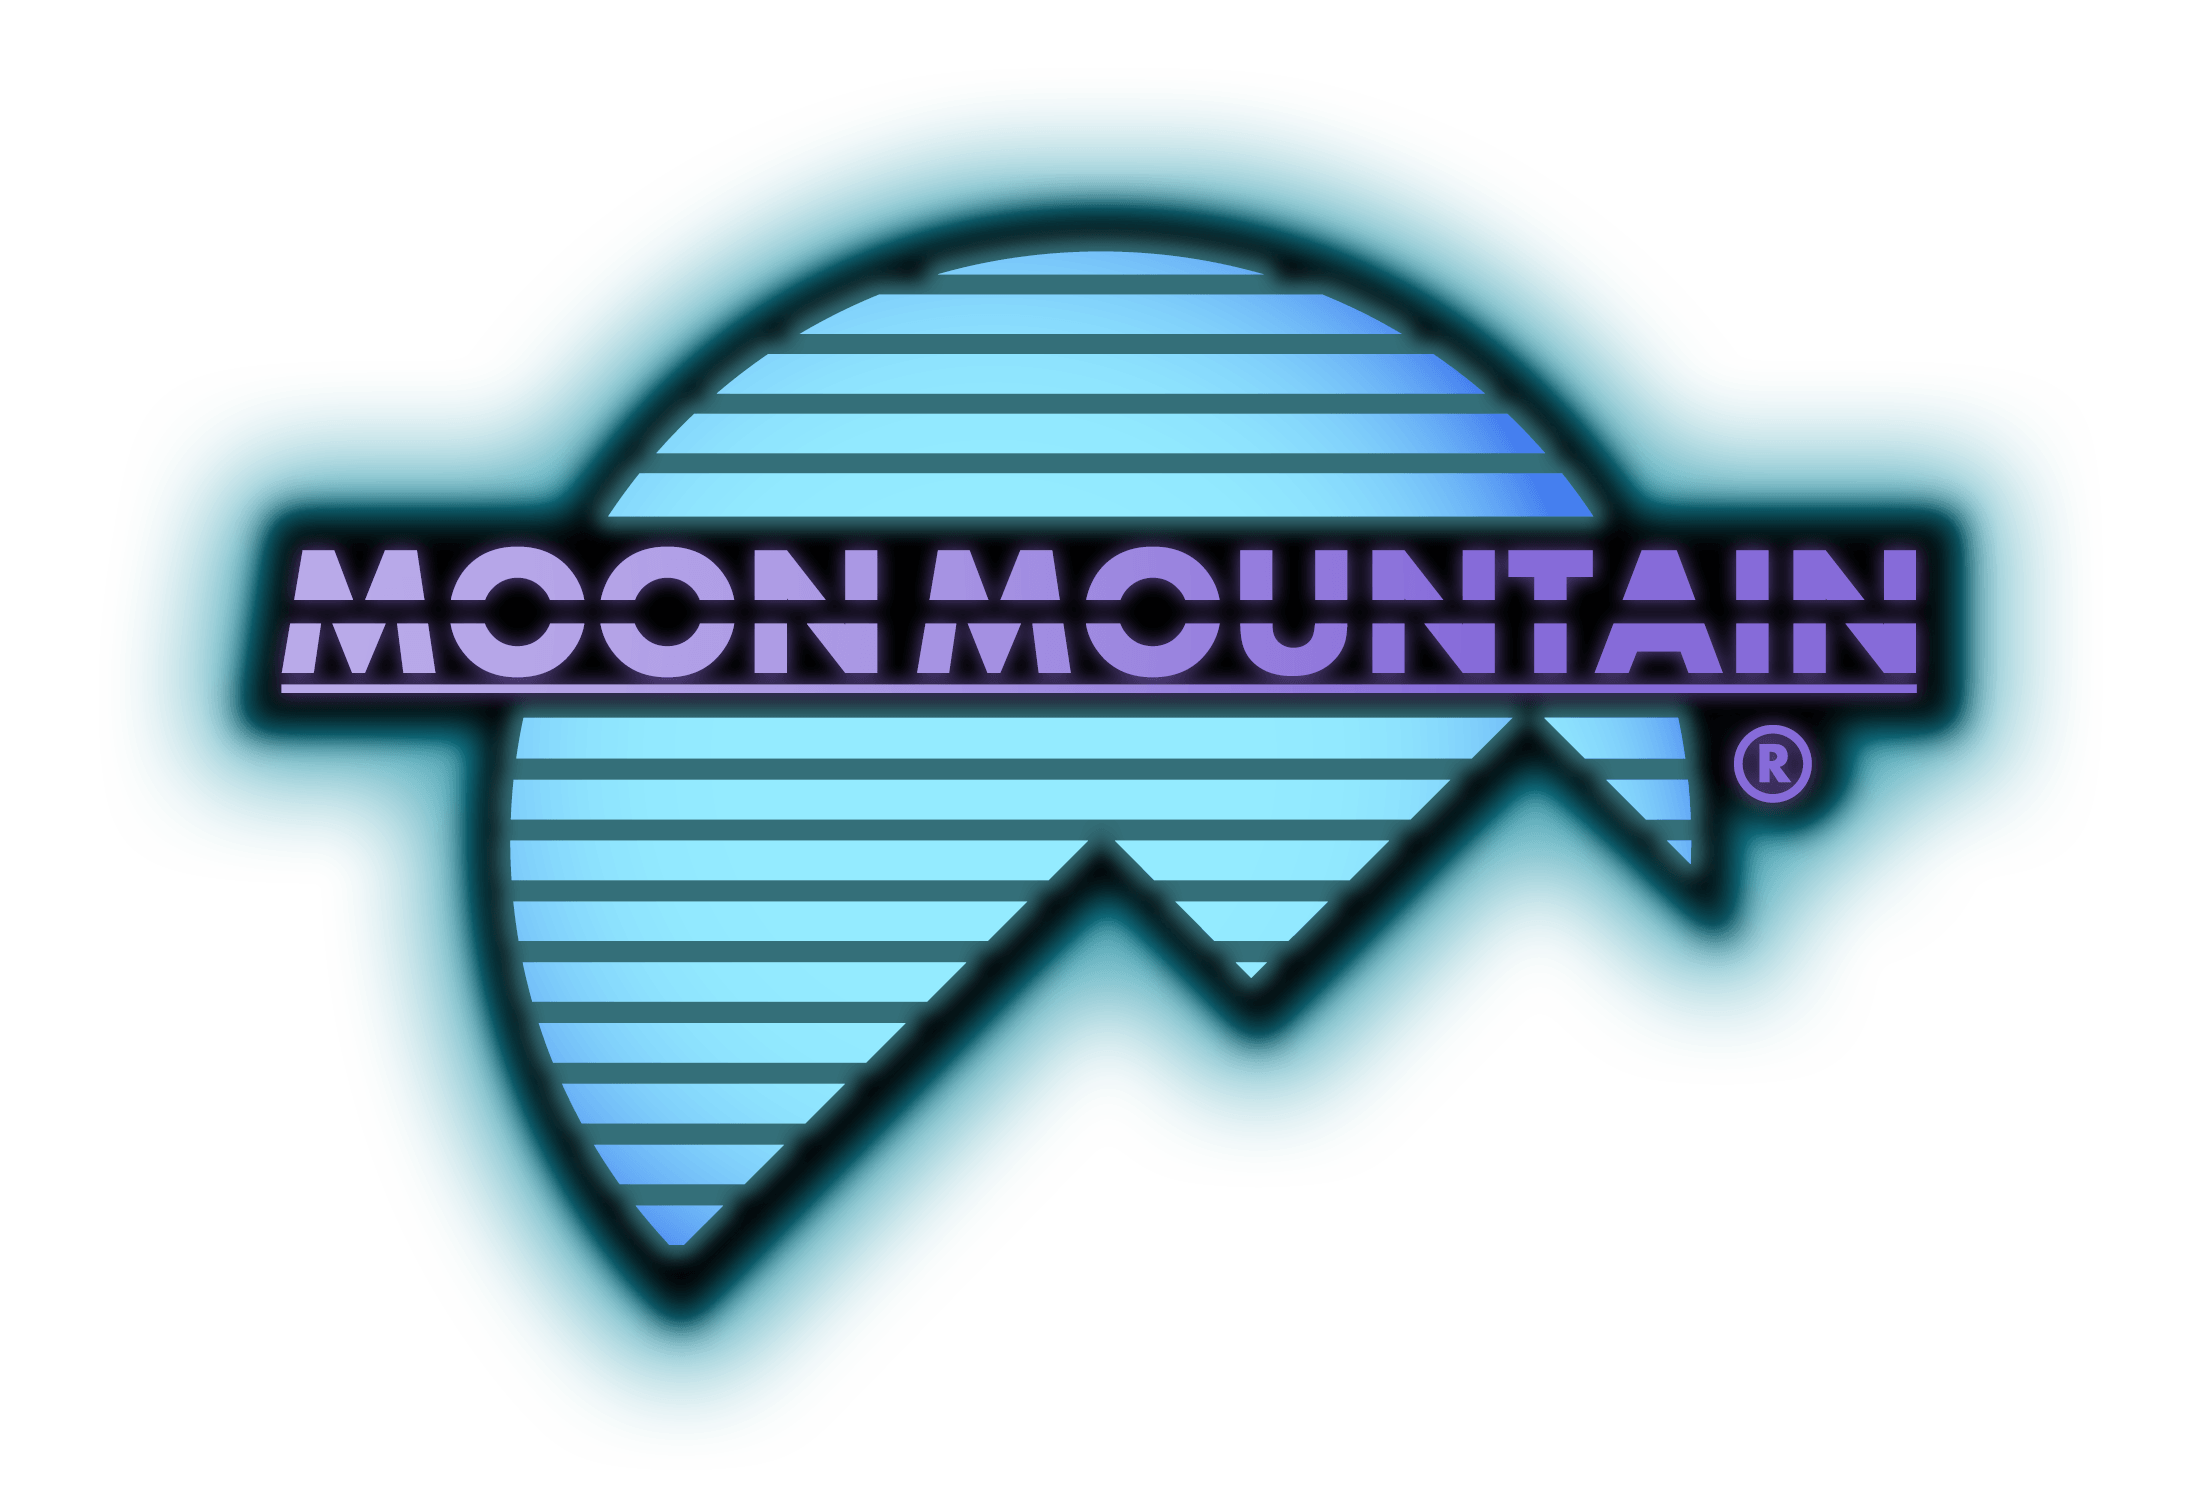 Moon Mountain Logo - Moon Mountain LOGO